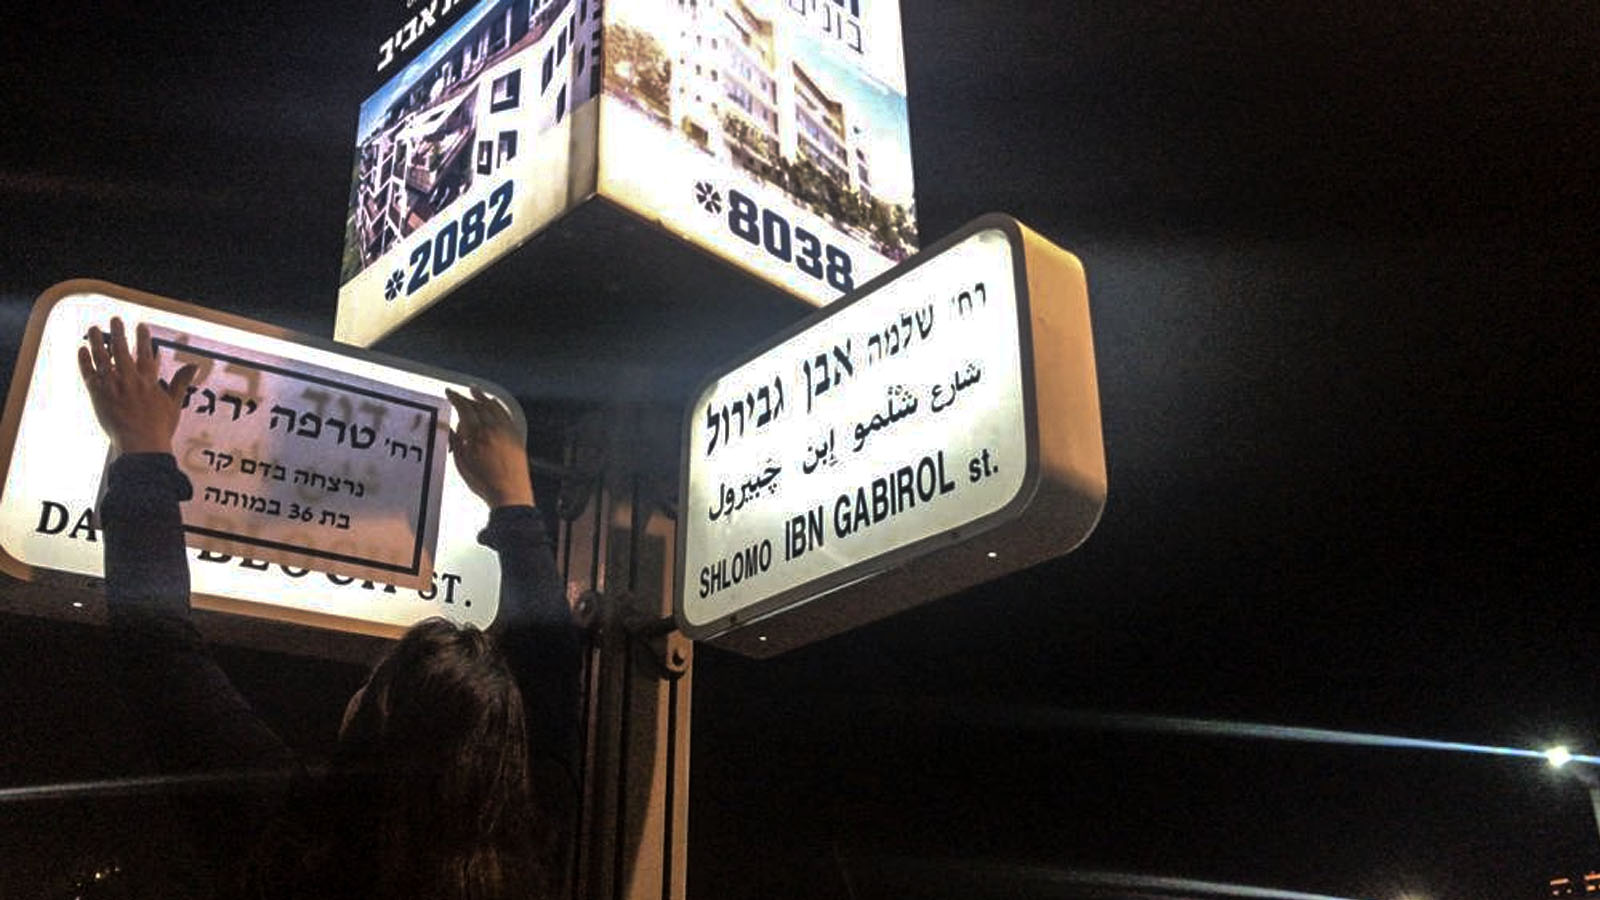 פעילות ופעילי נעמת, פשטו הלילה על רחובות תל אביב, והחליפו את שמות הרחובות הראשיים בעיר בשמות של נשים שנרצחו על רקע אלימות במשפחה.